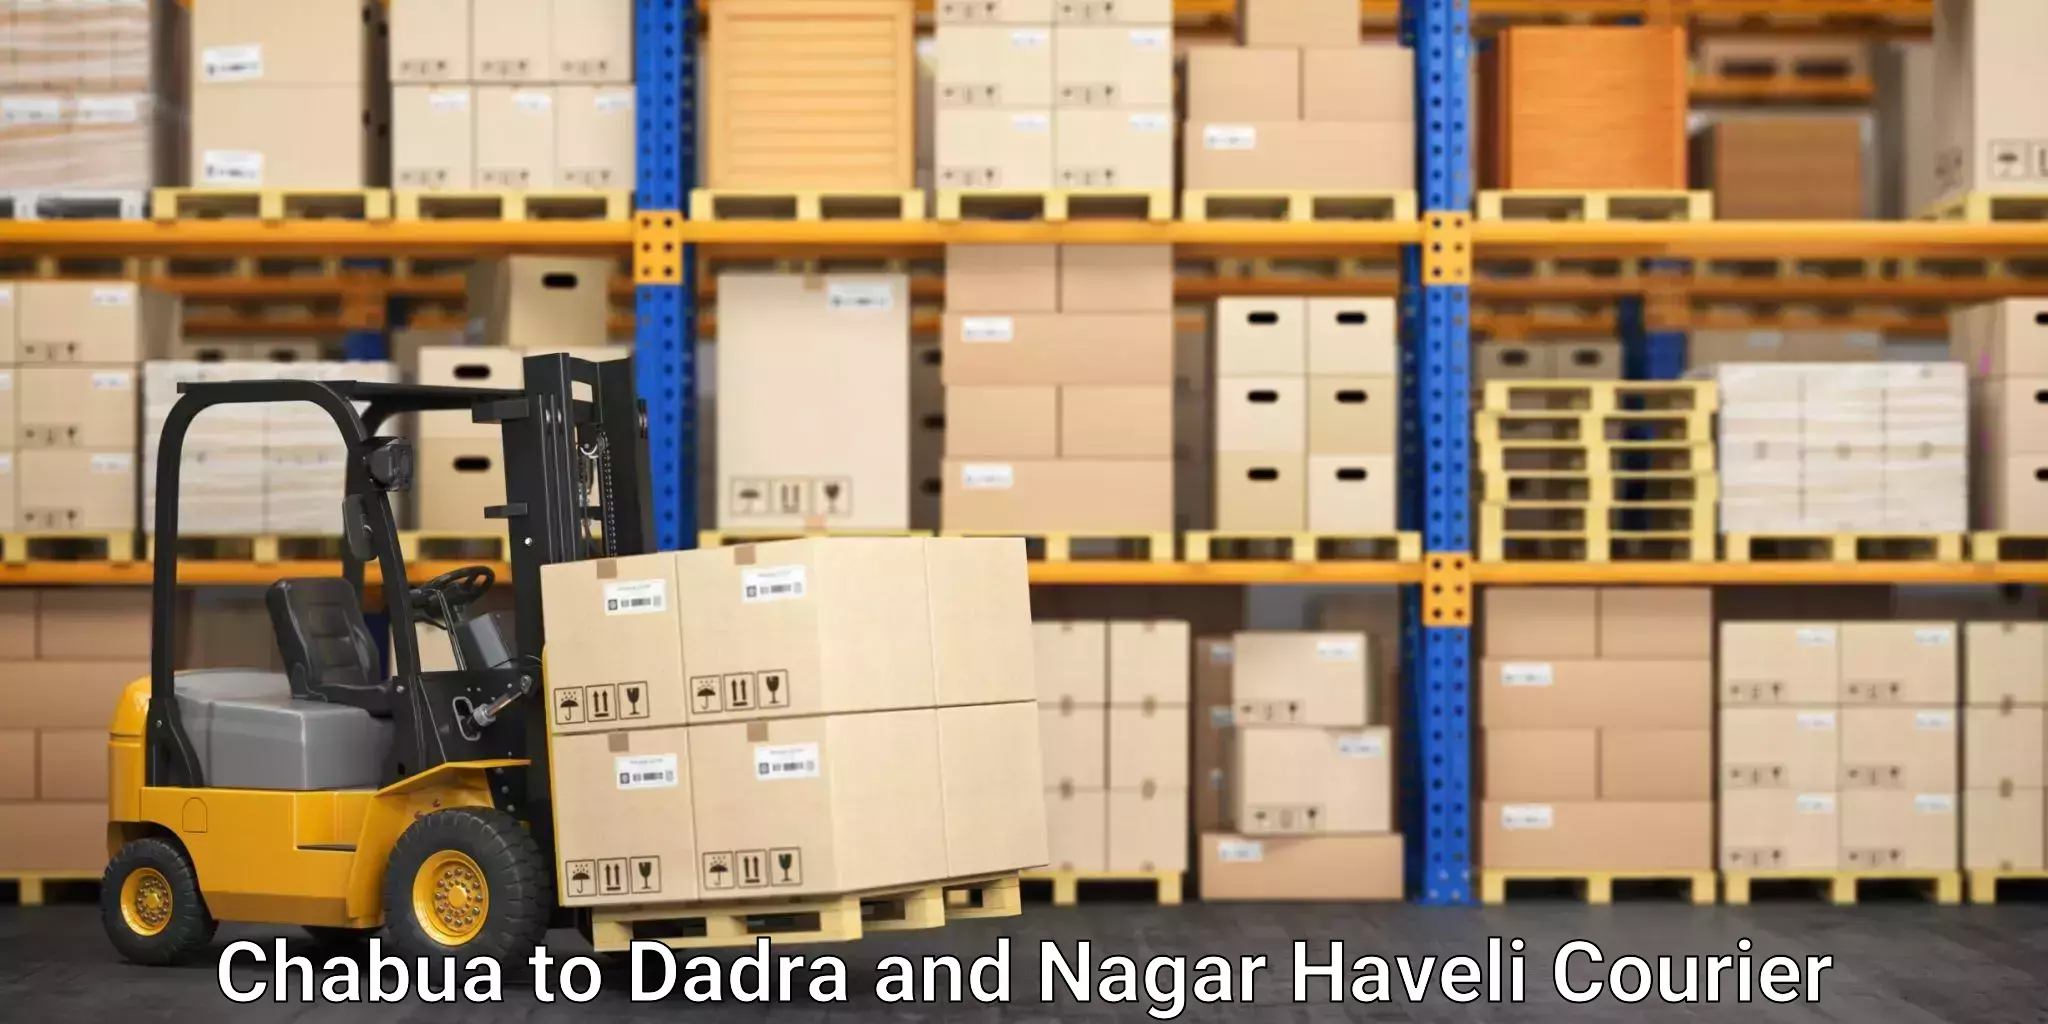 Global shipping solutions Chabua to Dadra and Nagar Haveli